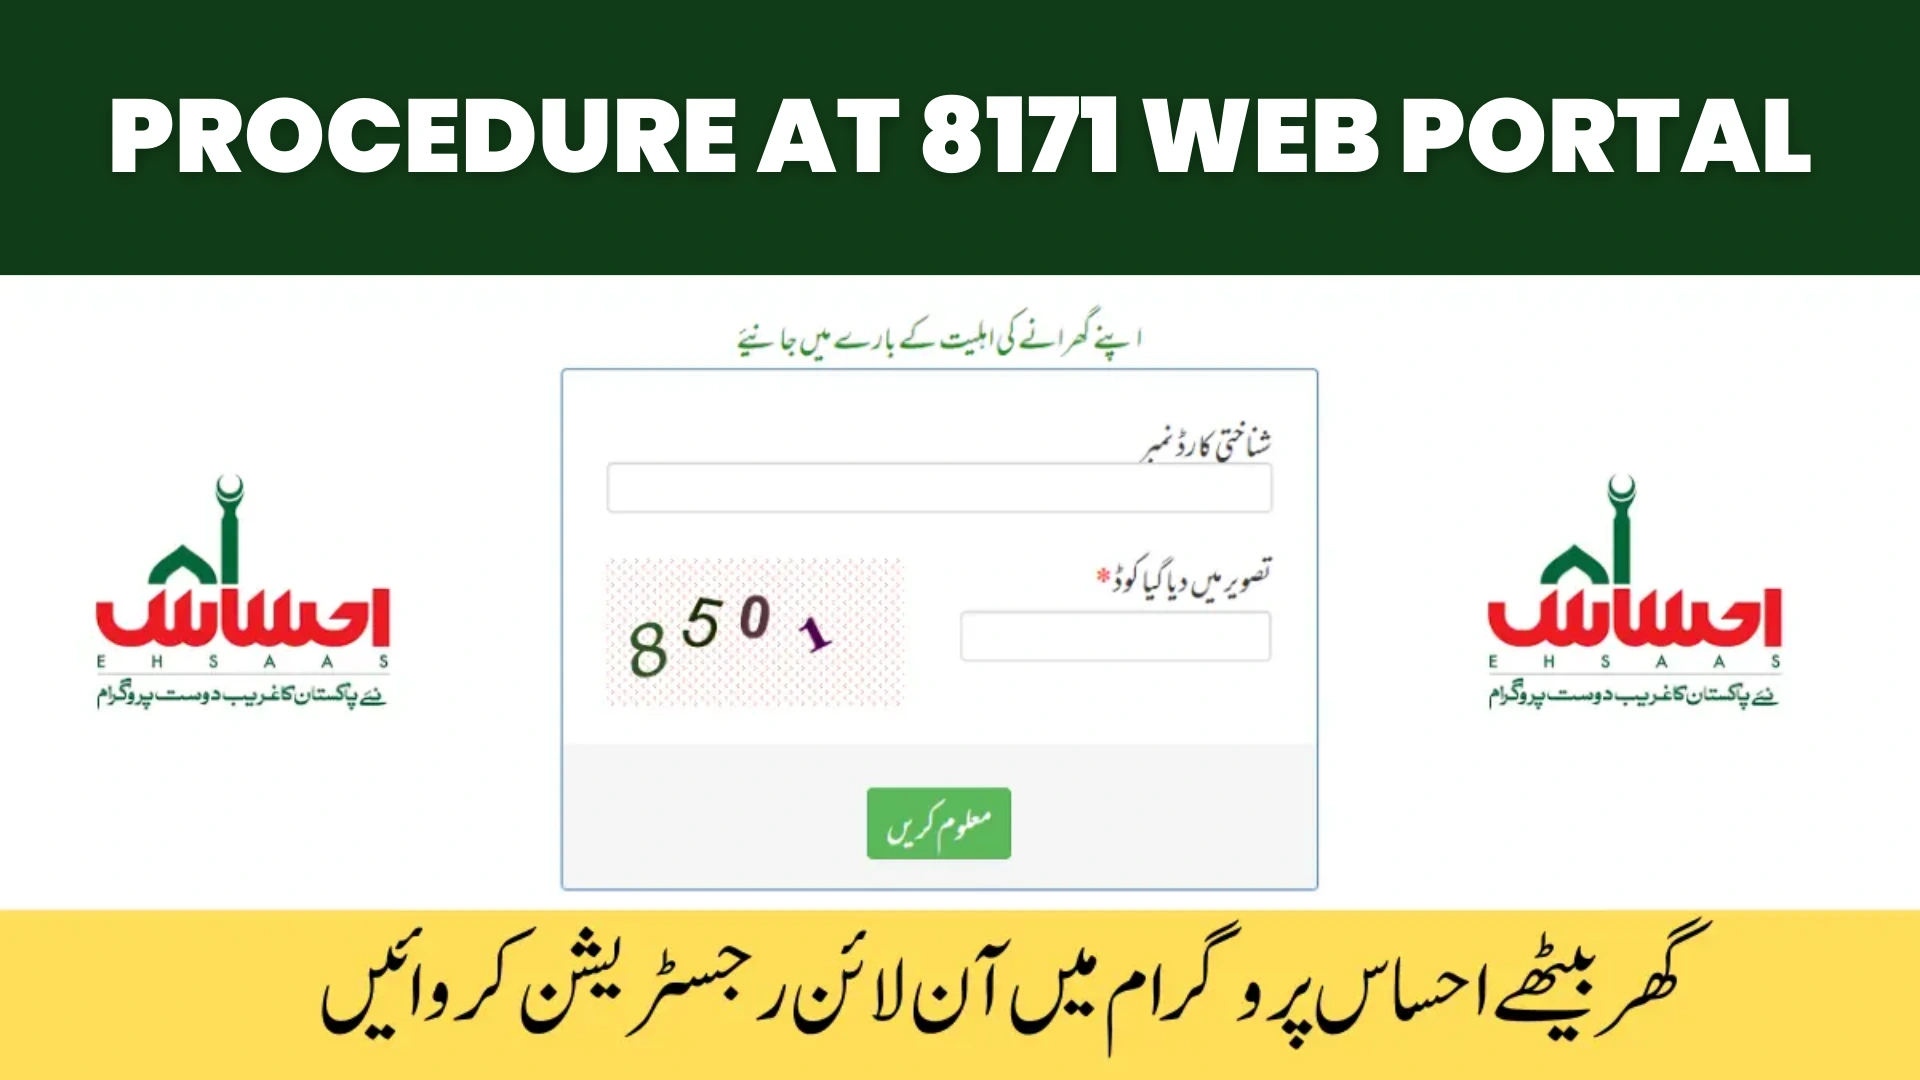 Procedure at 8171 Web Portal